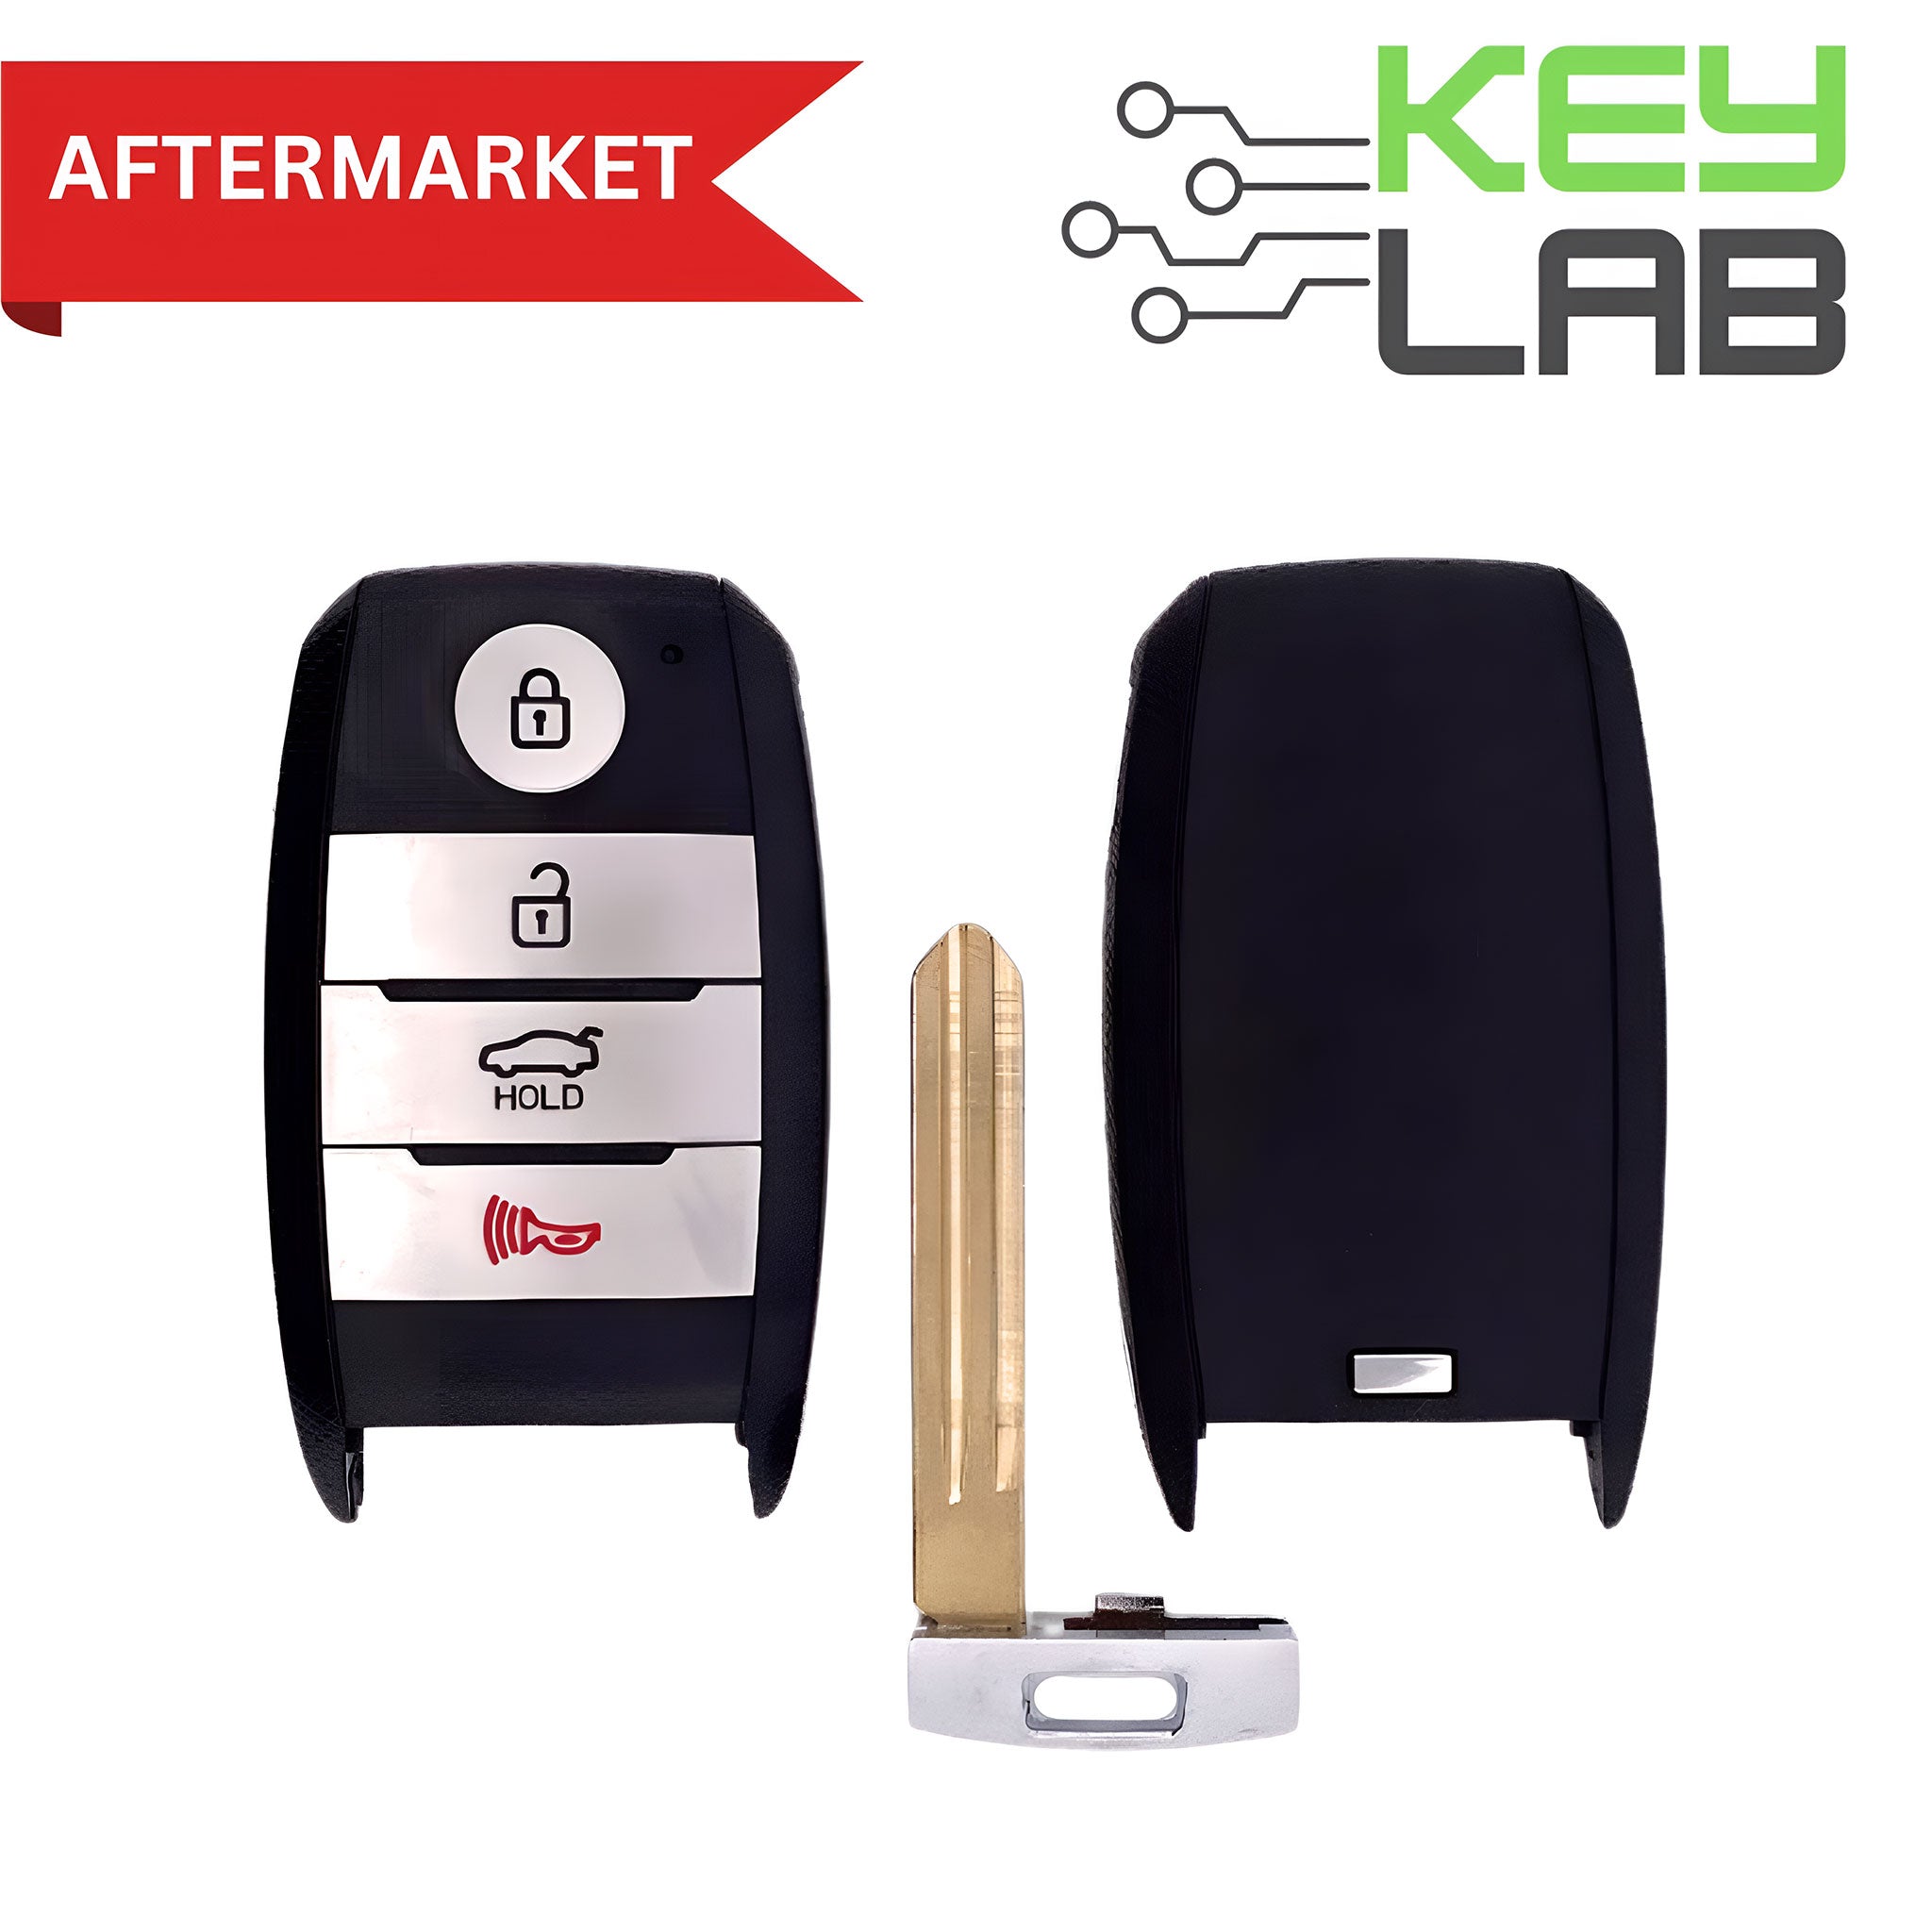 Kia Aftermarket 2017-2018 Forte Smart Key 4B Trunk FCCID: CQOFN00100 PN# 95440-A7600 - Royal Key Supply